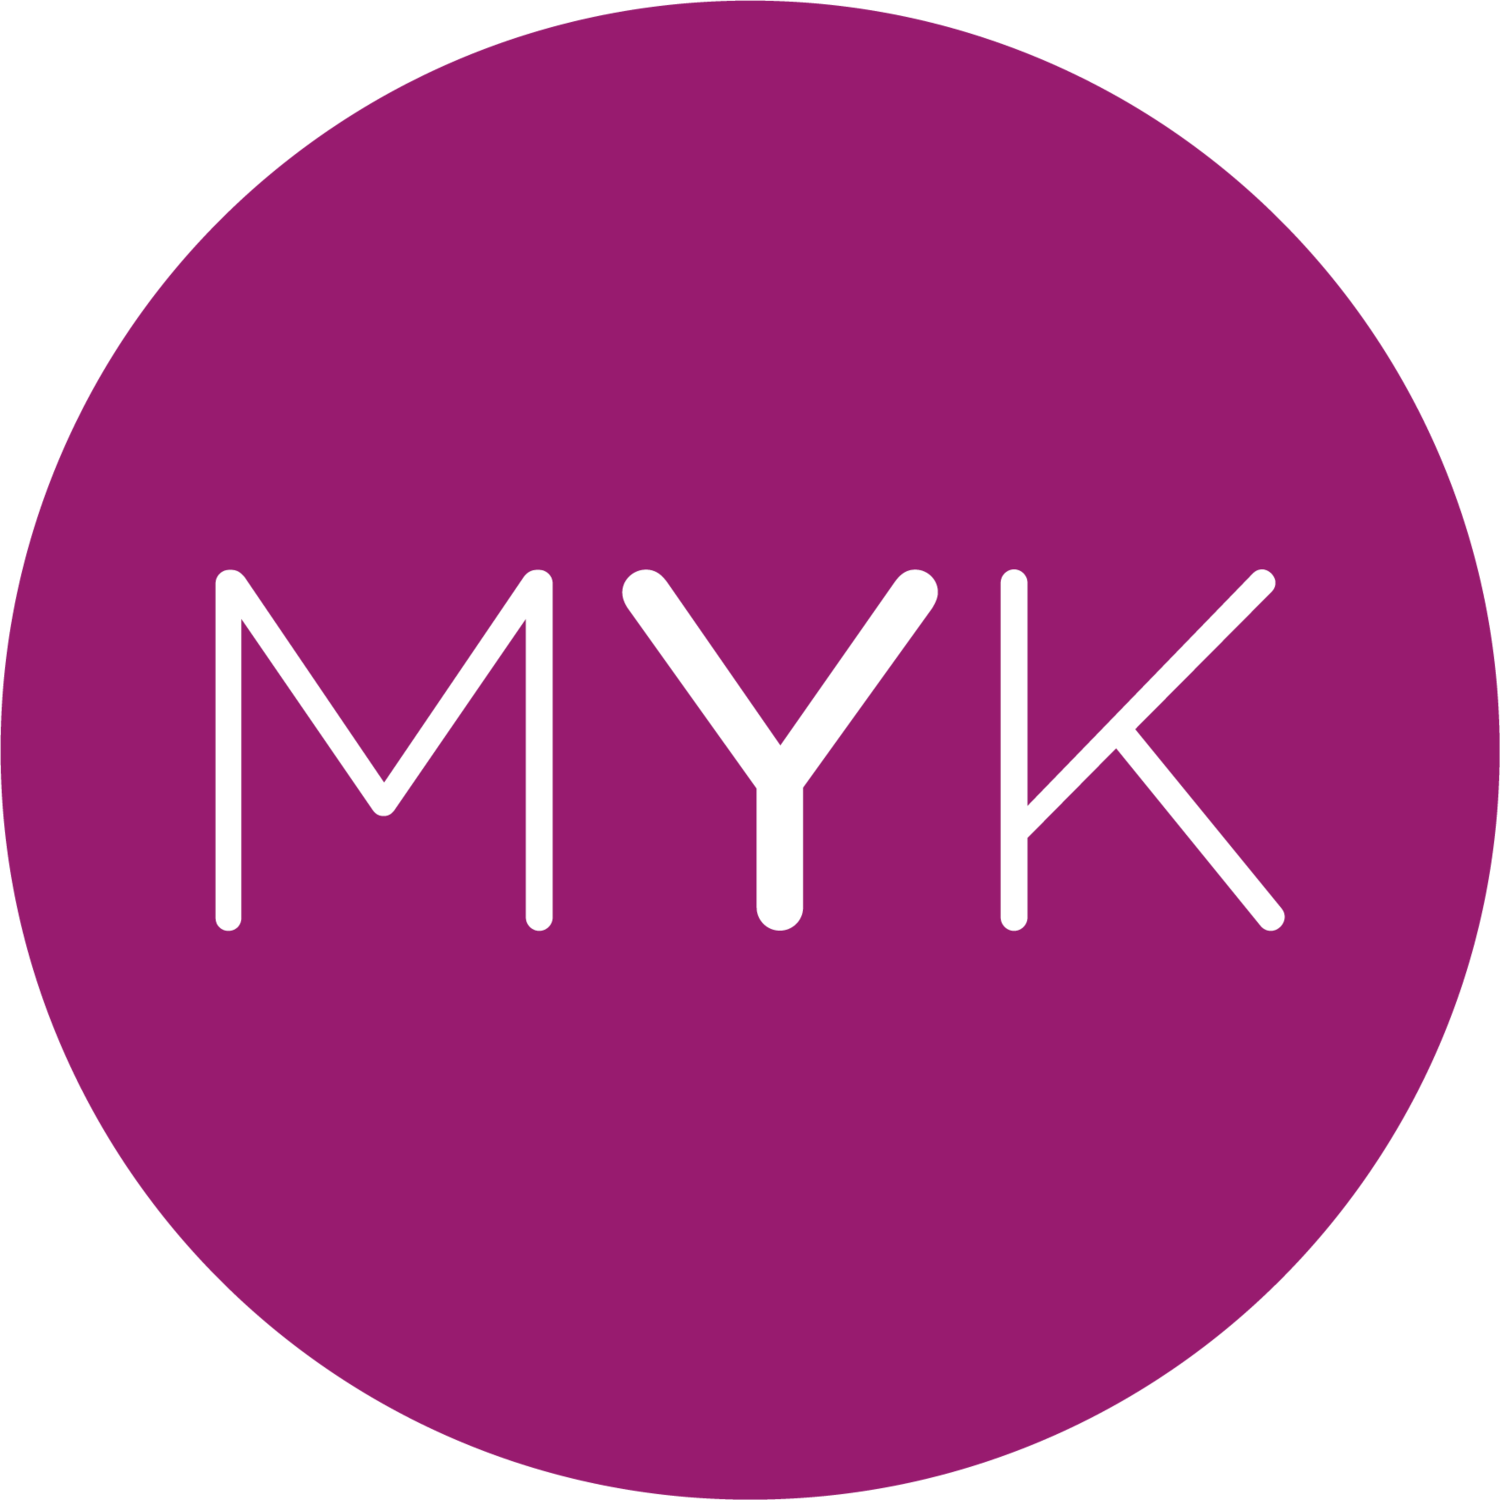 myk-berlin-about